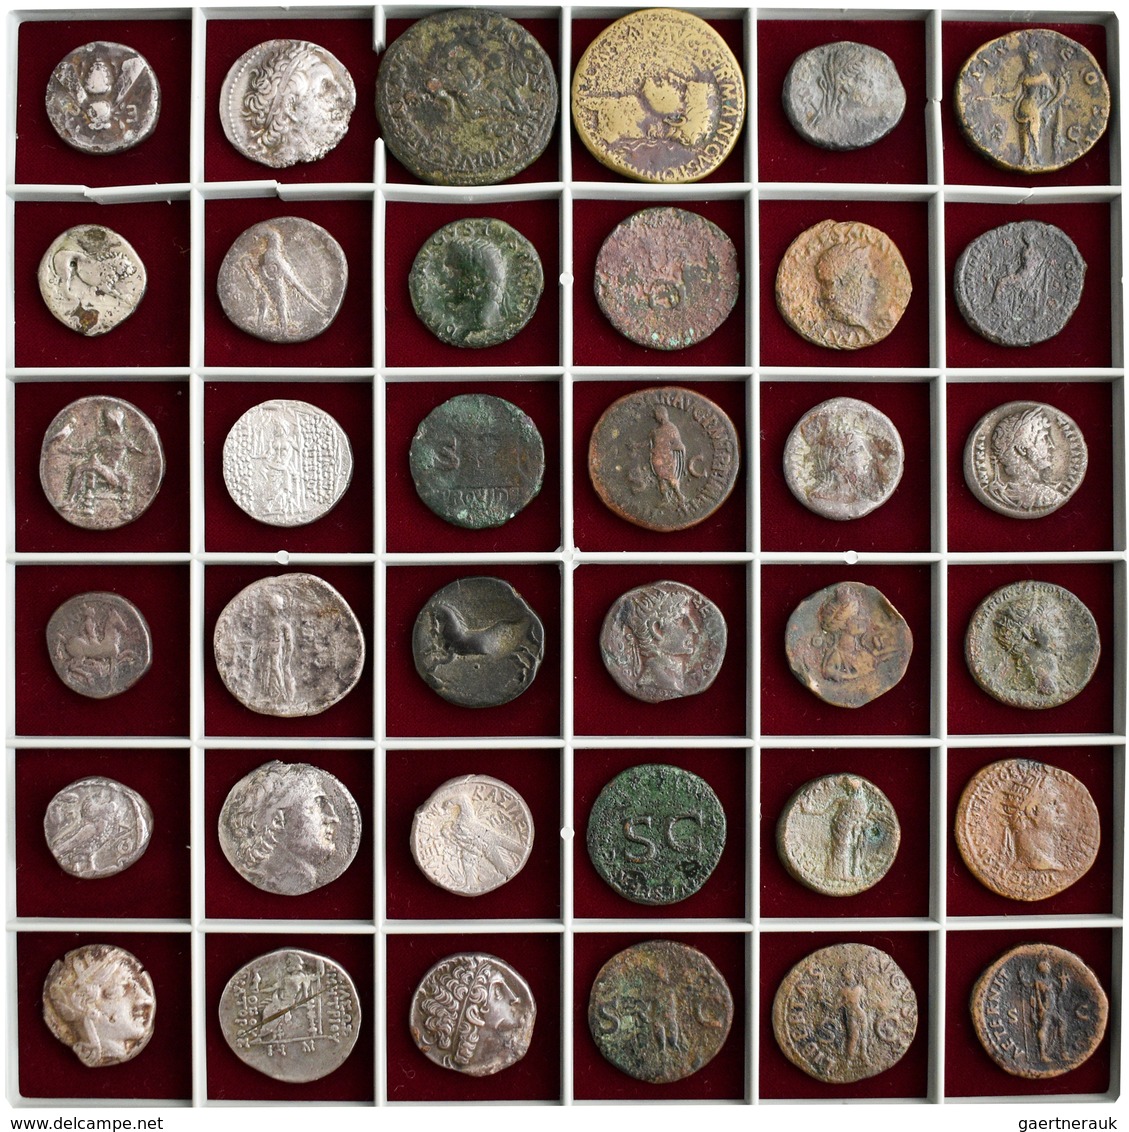 Antike: Eine auf 14 Schuber verteilten Sammlung von insgesamt 720 antiken Münzen: Griechische Münzen